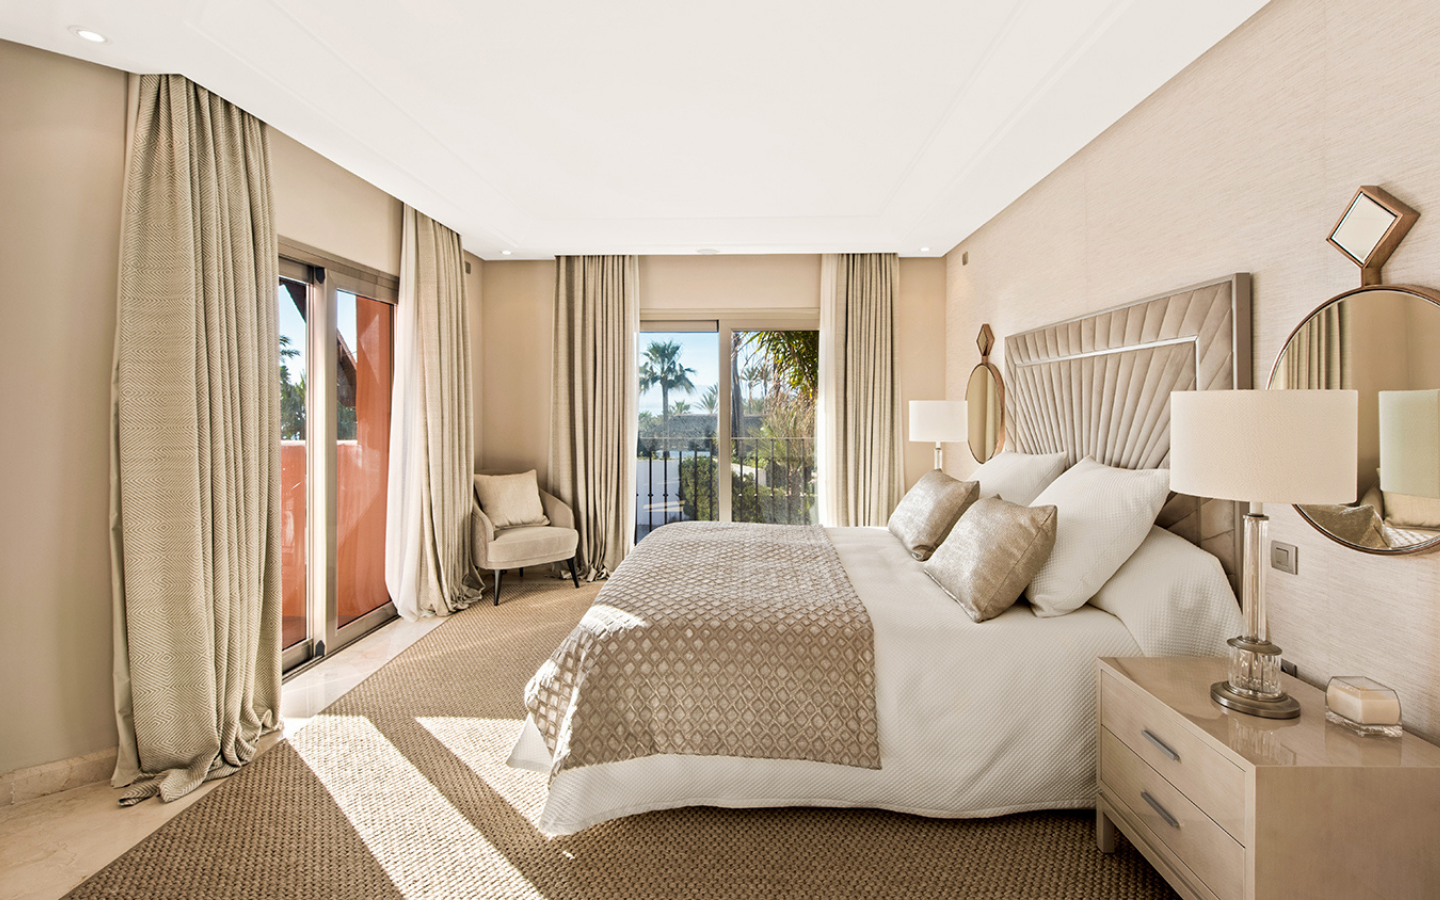 Penthouse exceptionnel en bord de mer à Marbella,